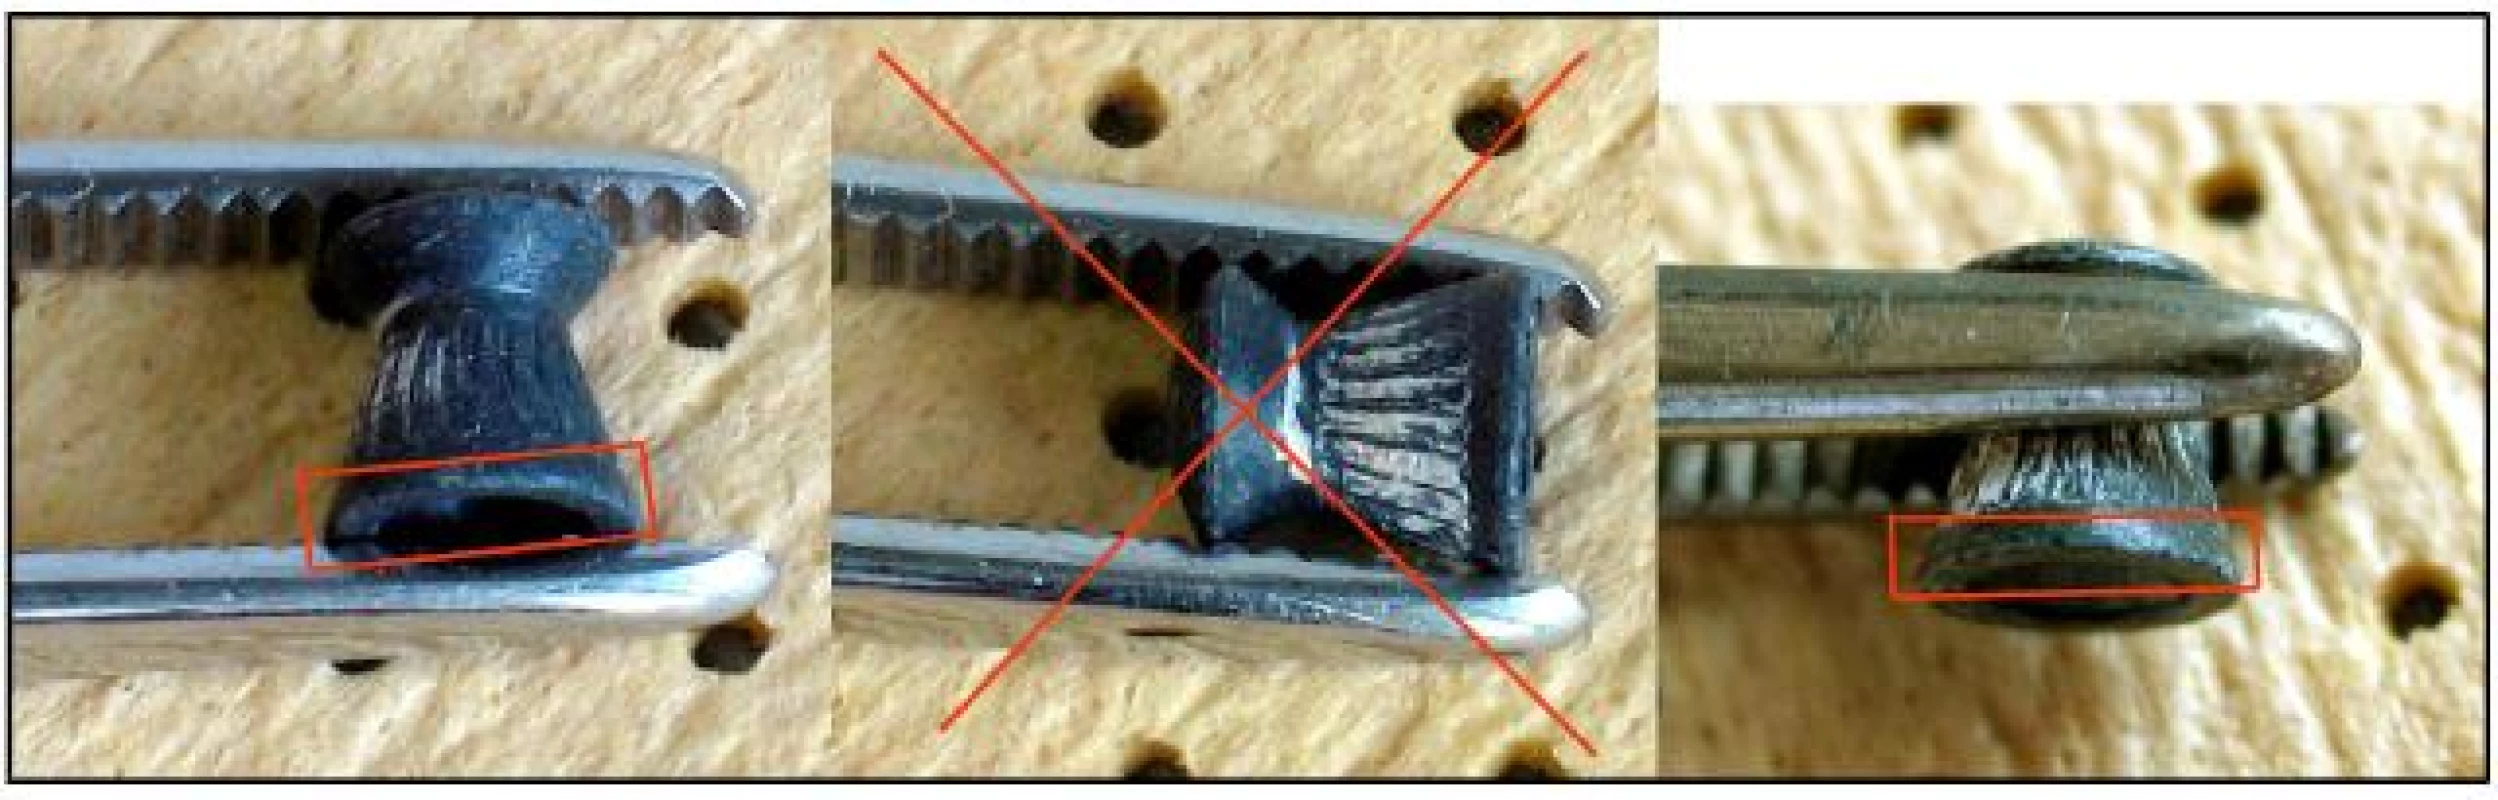 Olověná střela 4,5 mm Diabolo: prostřední ukázka je nejméně vhodný způsob úchopu